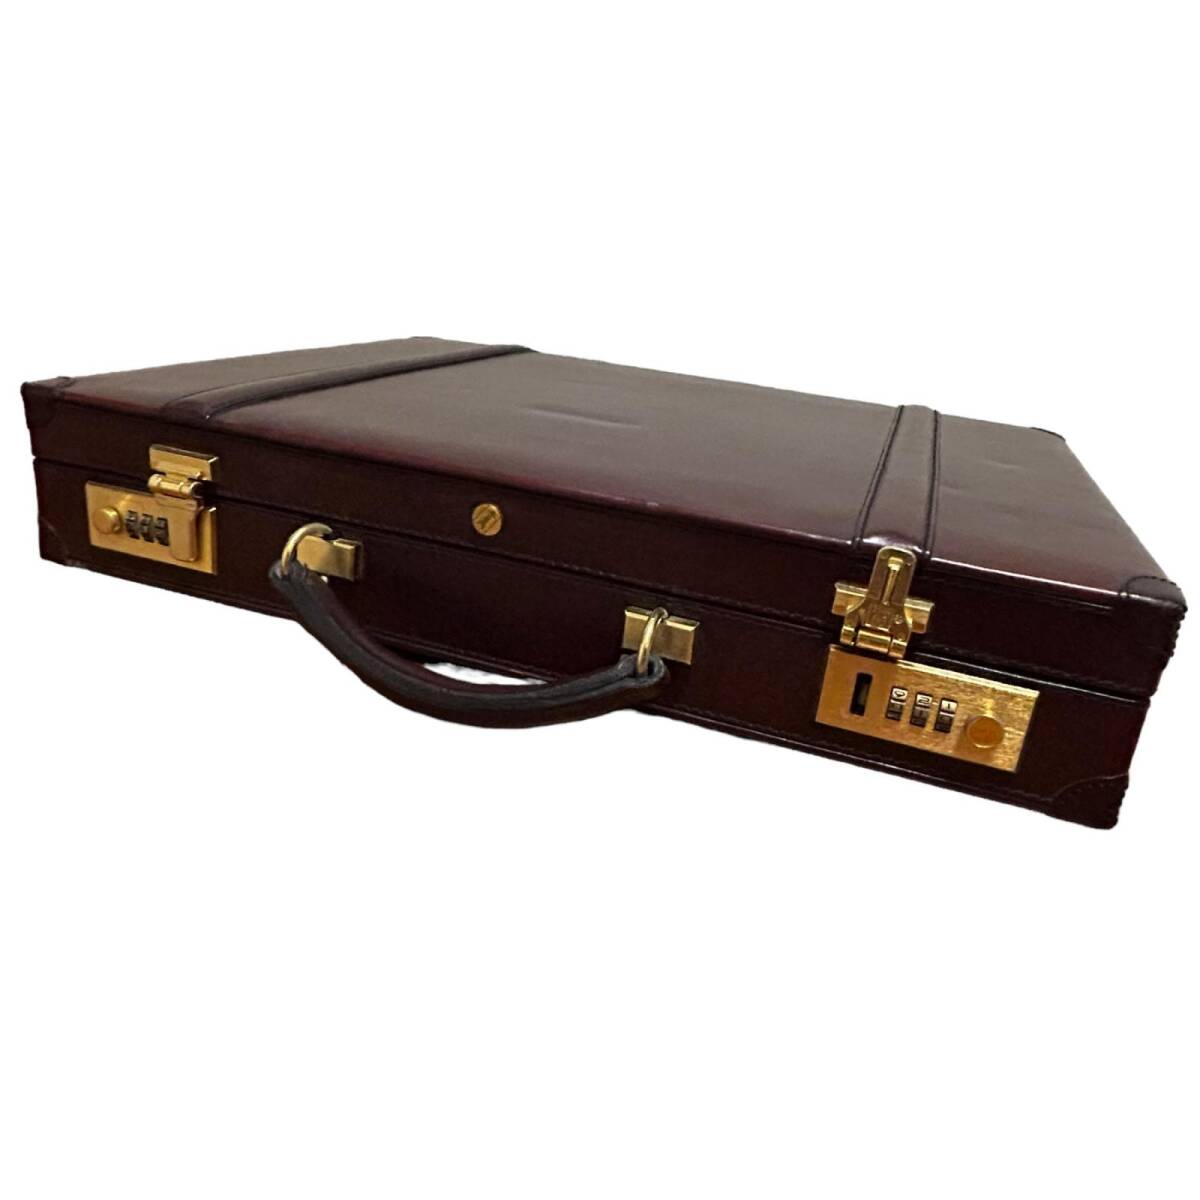  Gold-Pfeil GOLD PFEIL attache case dial lock metal fittings trunk case business bag leather men's bordeaux series 